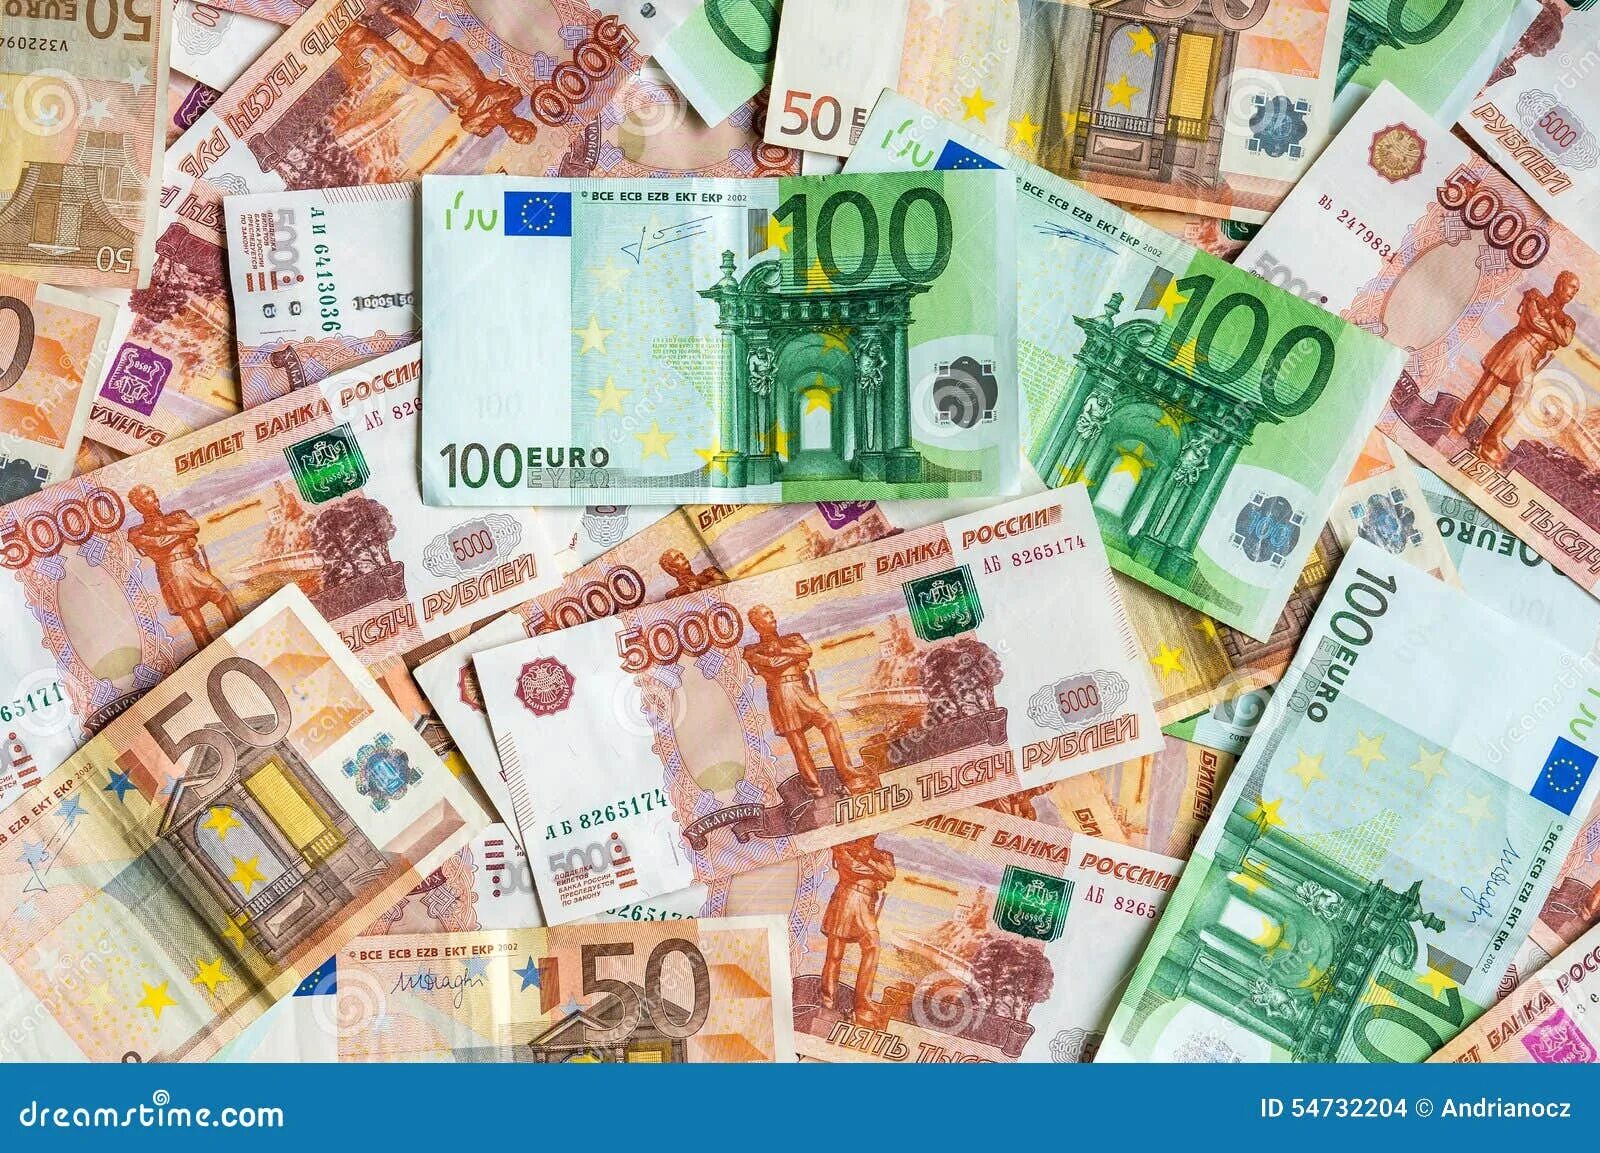 5000 Евро. 5000 Евро банкнота. Картинка 5 тысяч евро. 1000 Евро купюра.